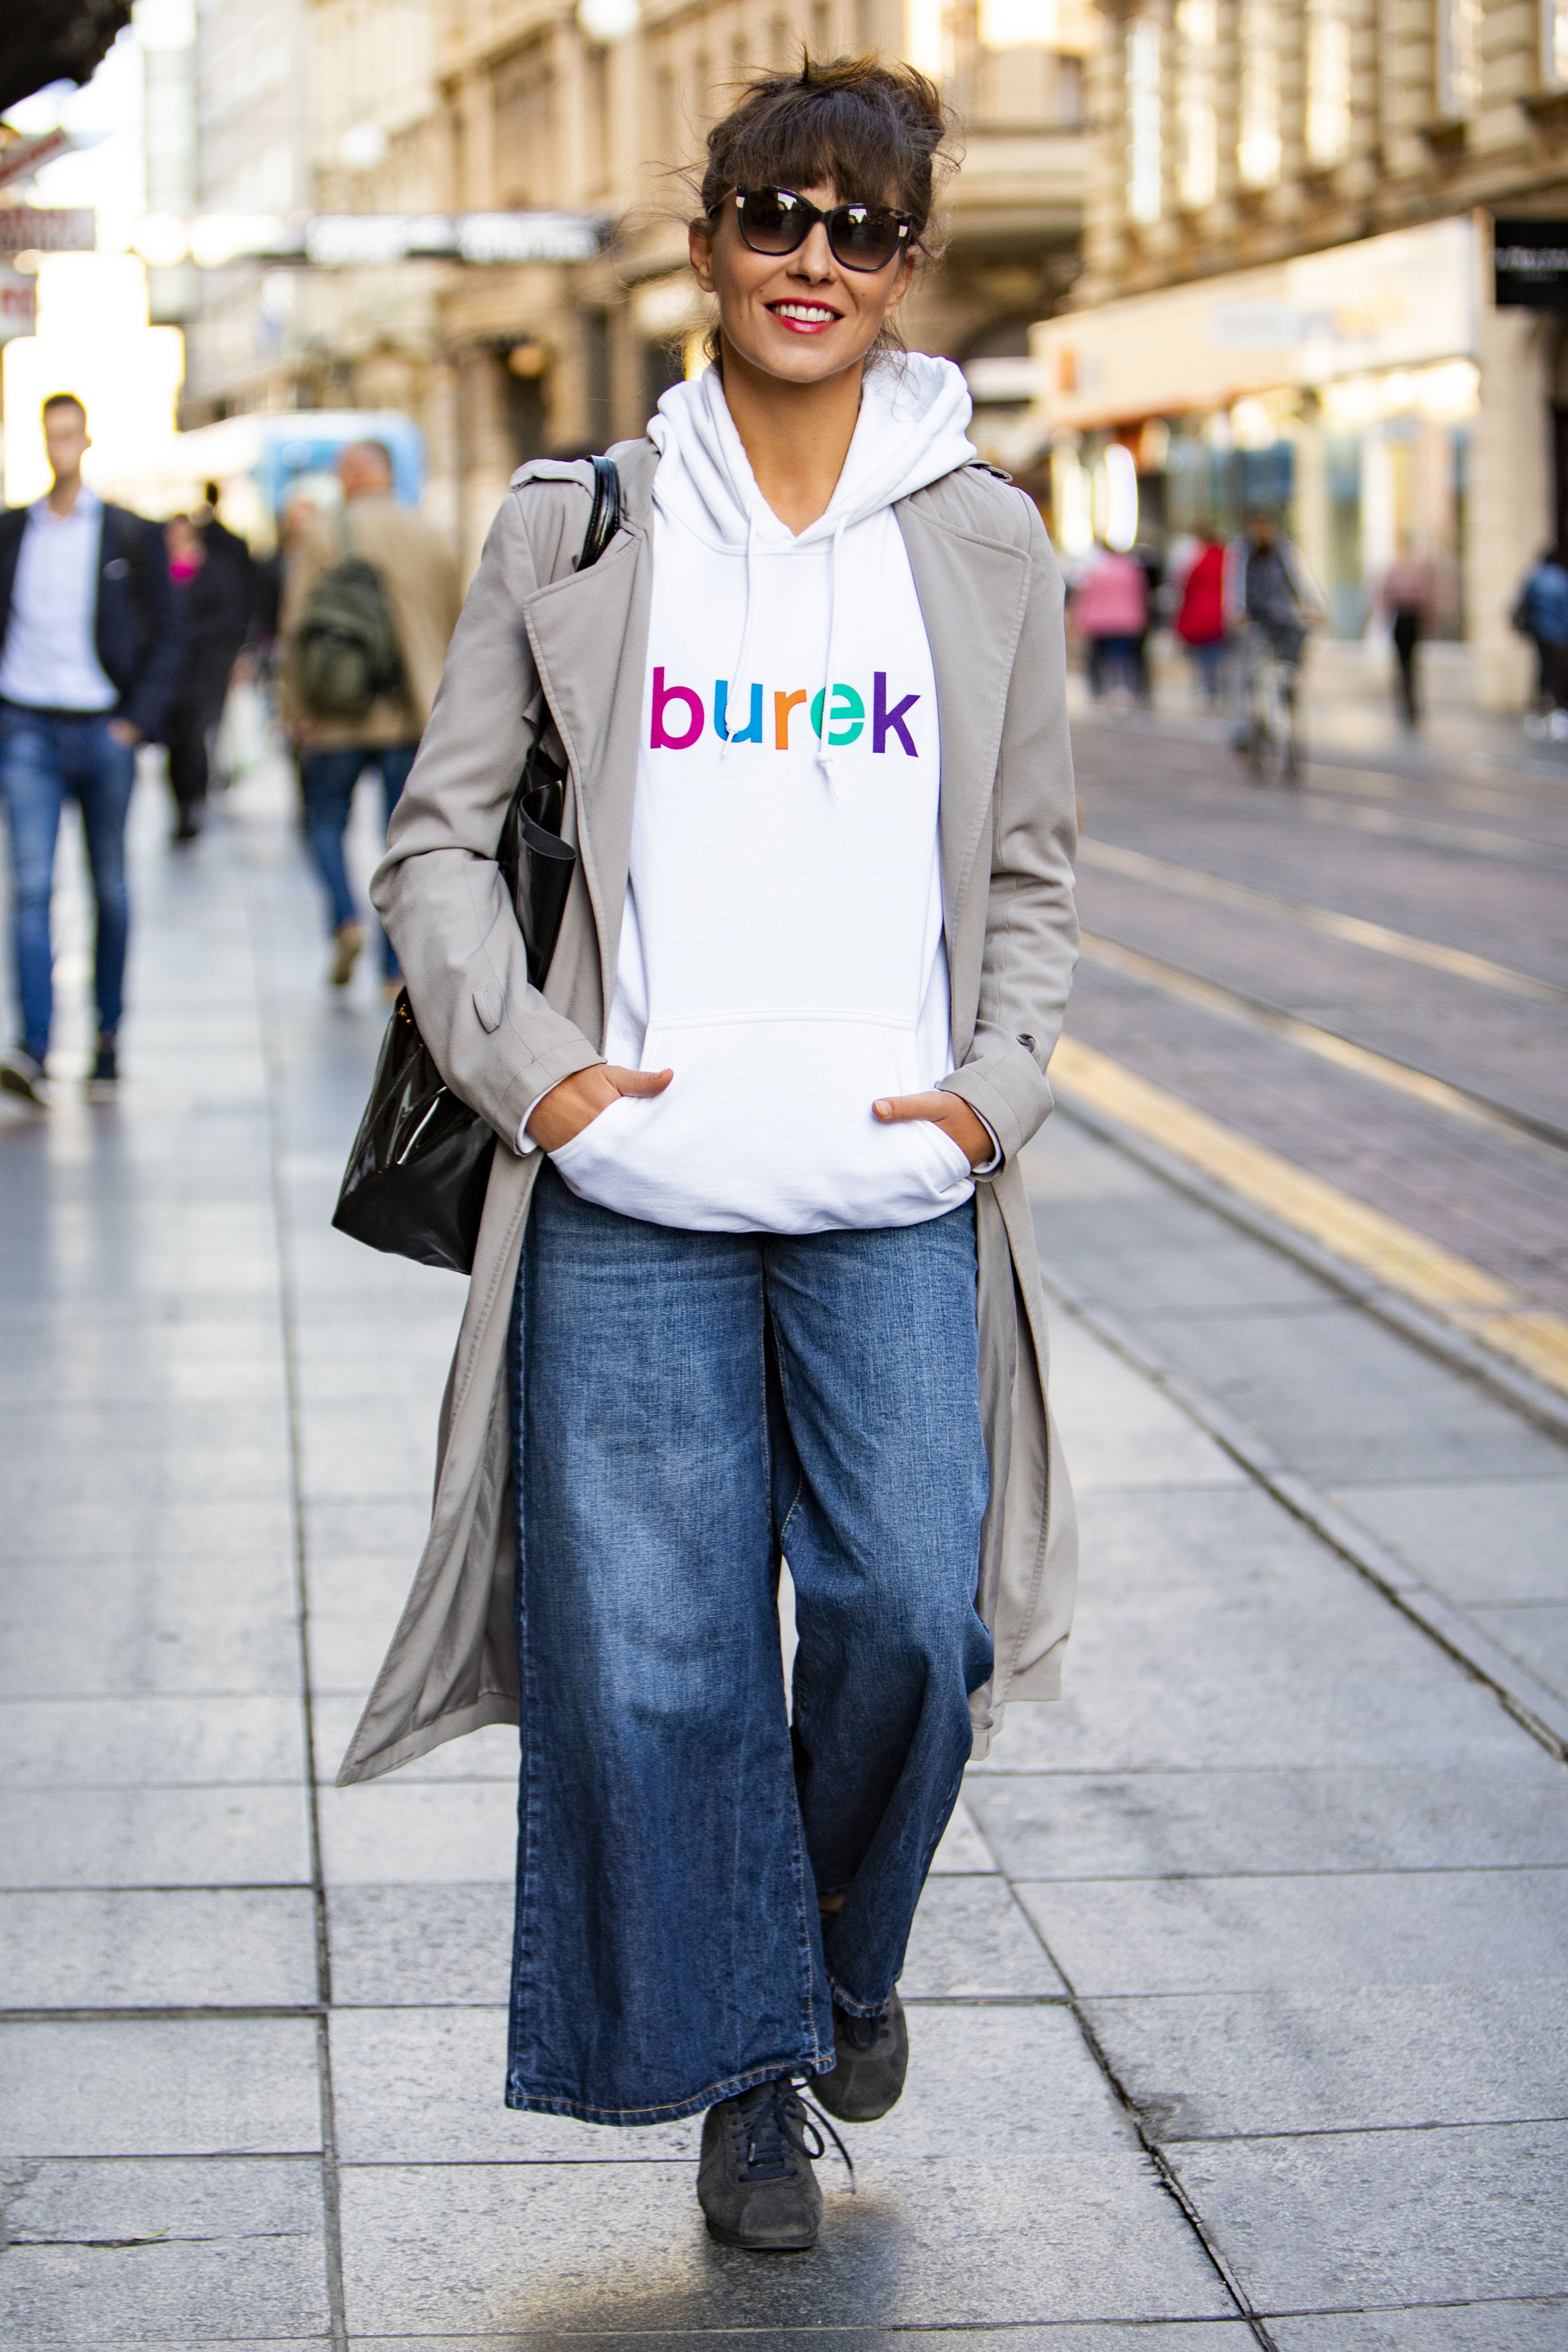 Glumica nosi majicu s natpisom 'Burek', a njen cool styling odmah nam je zapeo za oko